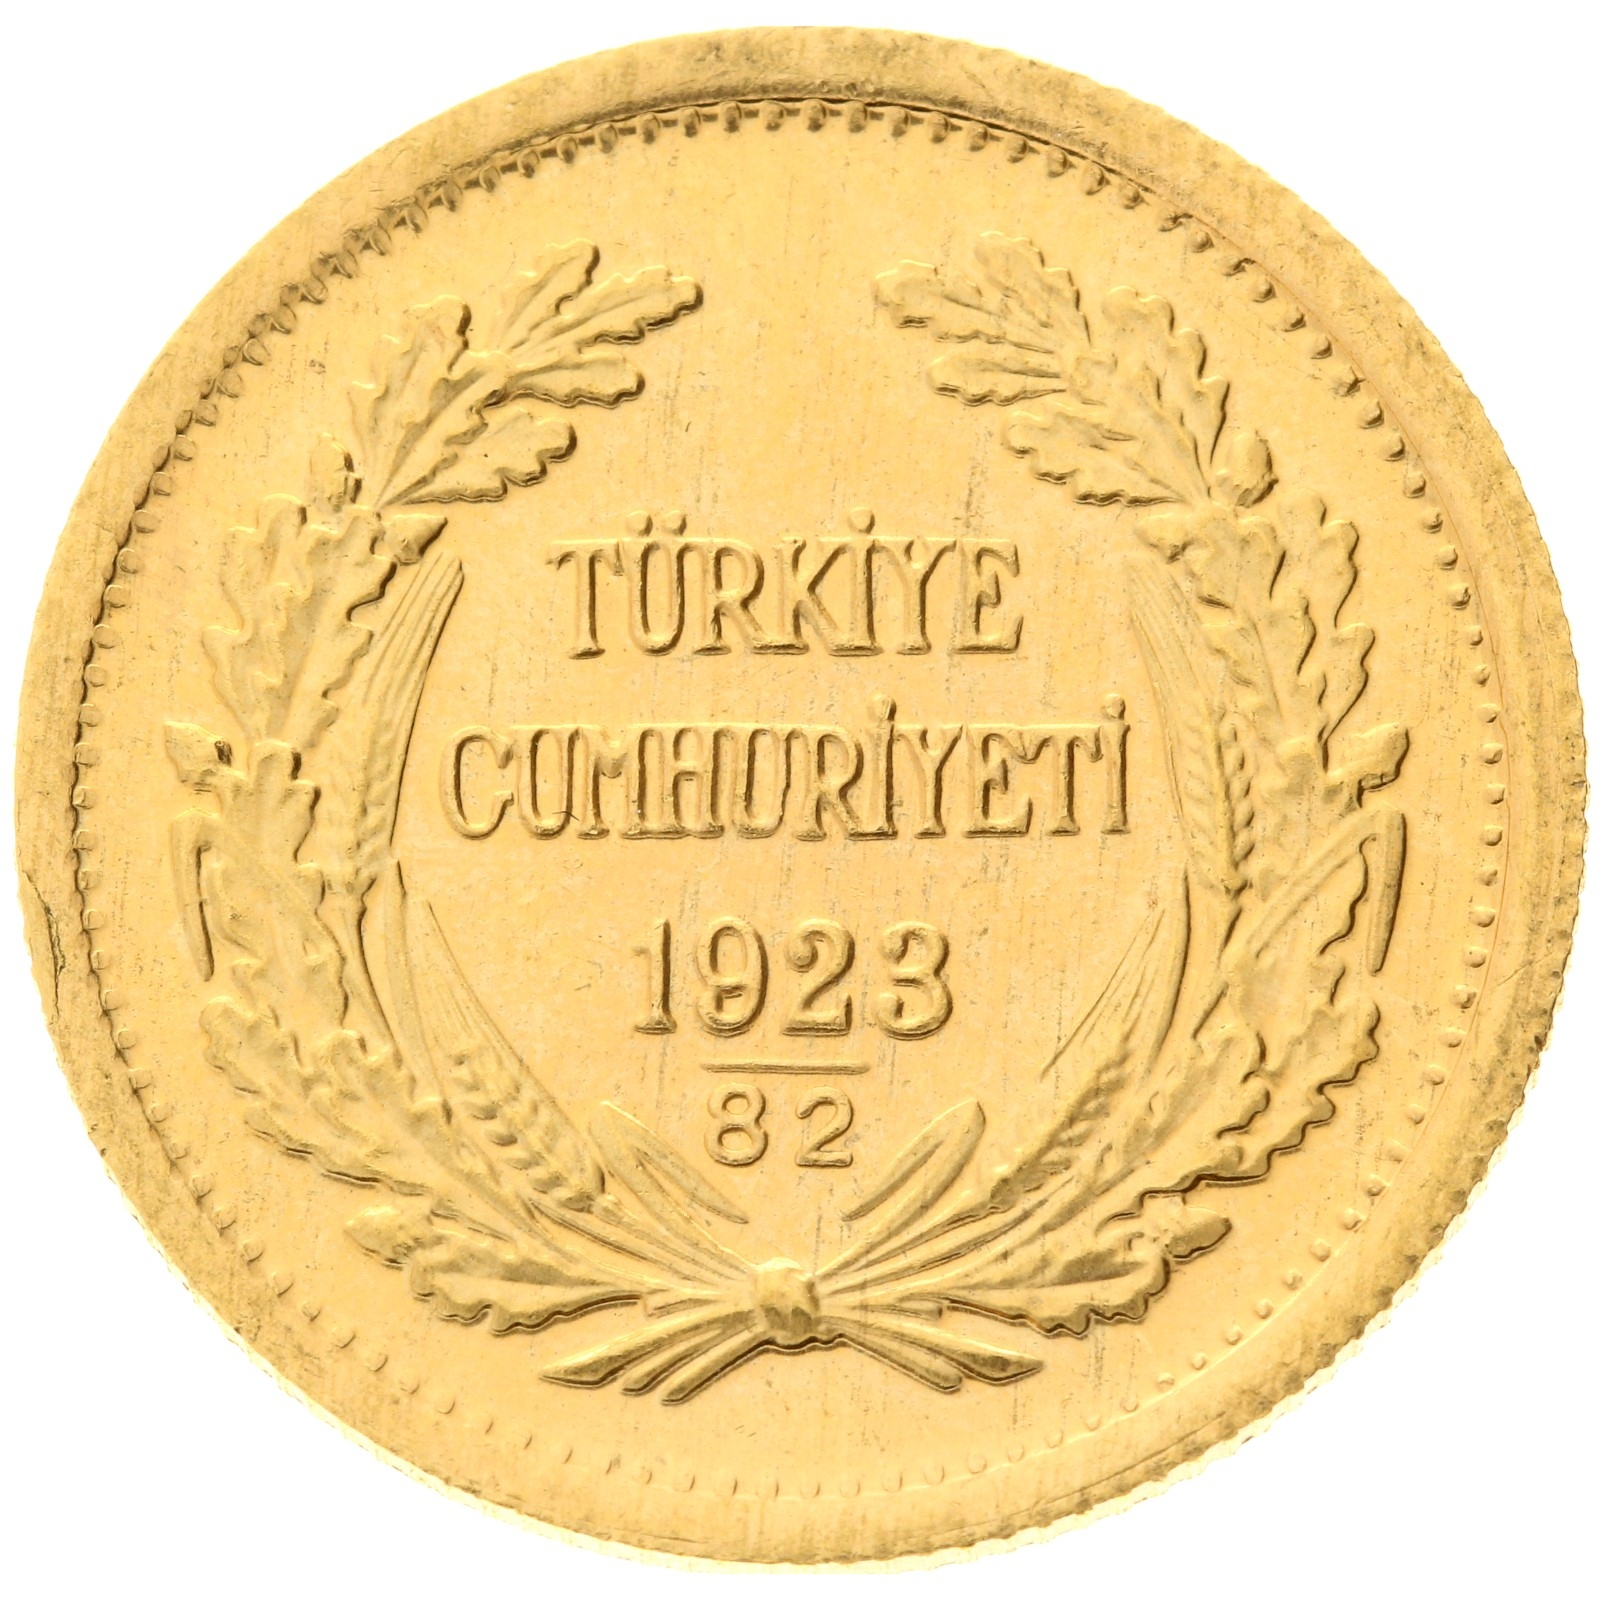 Turkey - 100 kurush 1923/82 (2004) - Kemal Ataturk 